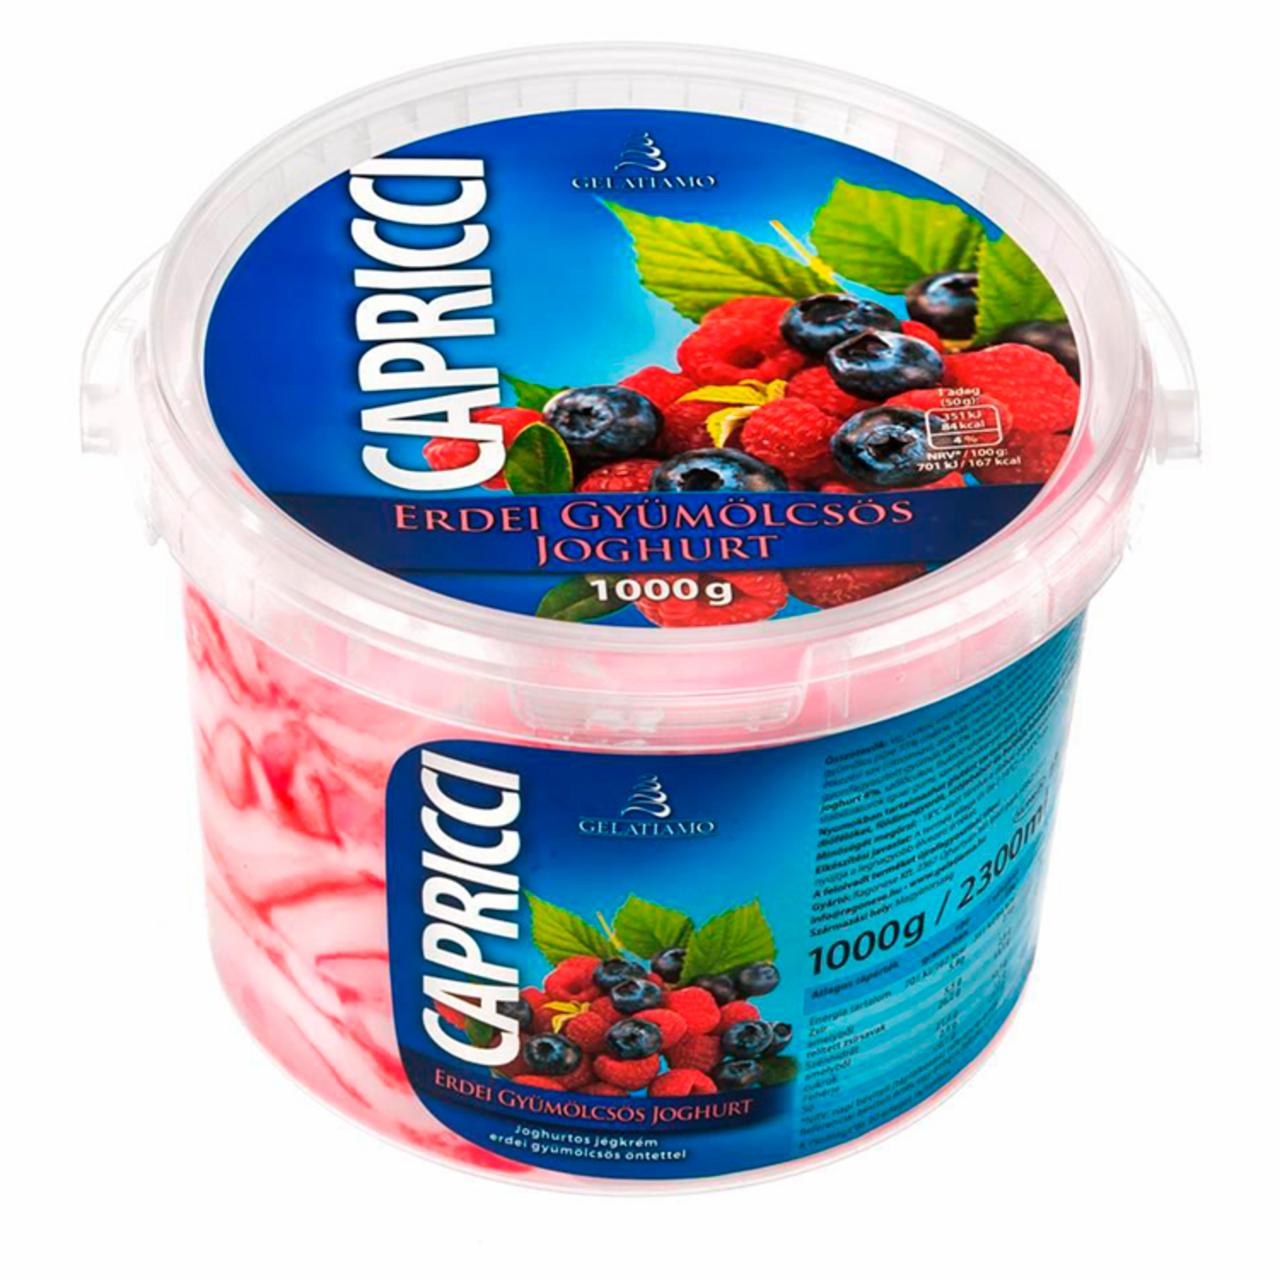 Képek - Gelatiamo Capricci joghurtos jégkrém erdei gyümölcsös öntettel 1000 g